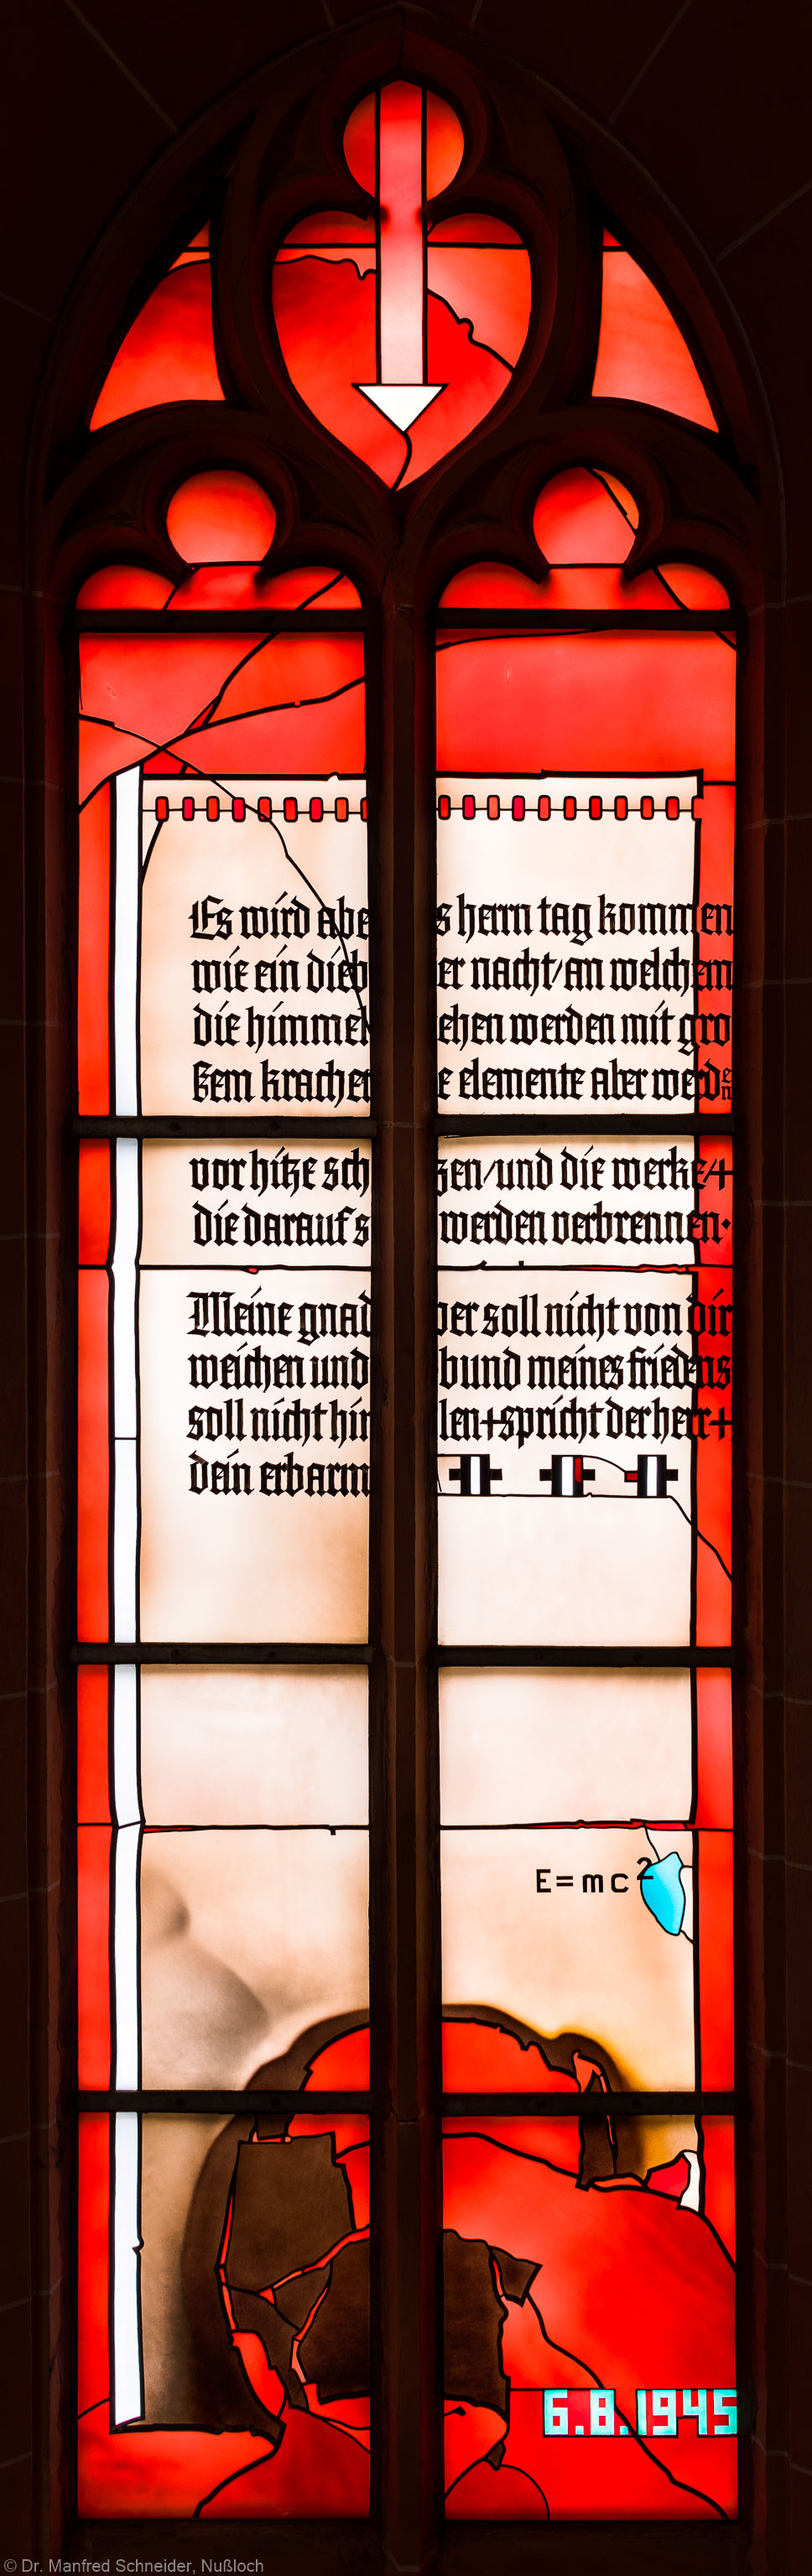 Heidelberg - Heiliggeistkirche - Südschiff - 1. Joch, von Westen aus gezählt - Gesamtaufnahme des "Physik-Fensters" von Johannes Schreiter (aufgenommen im Oktober 2015, am späten Vormittag)